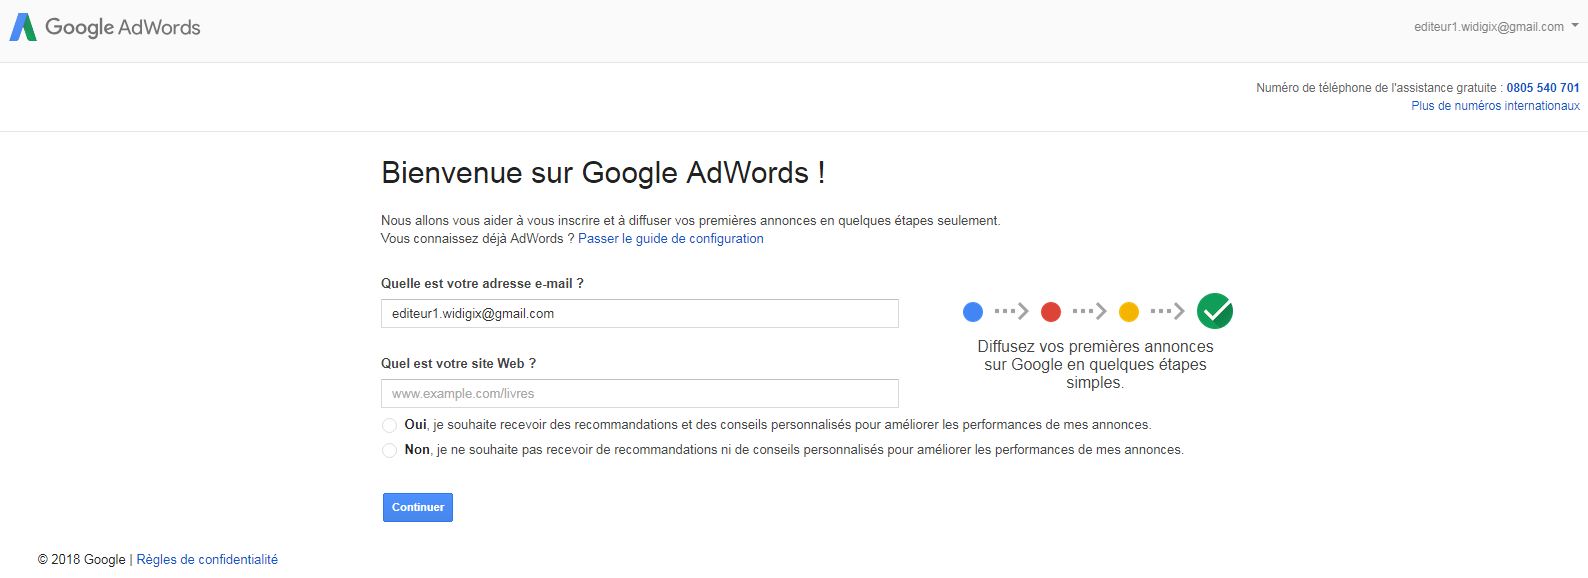 Une campagne mobile Adwords comment ça marche - Agence de Marketing Digital Paris